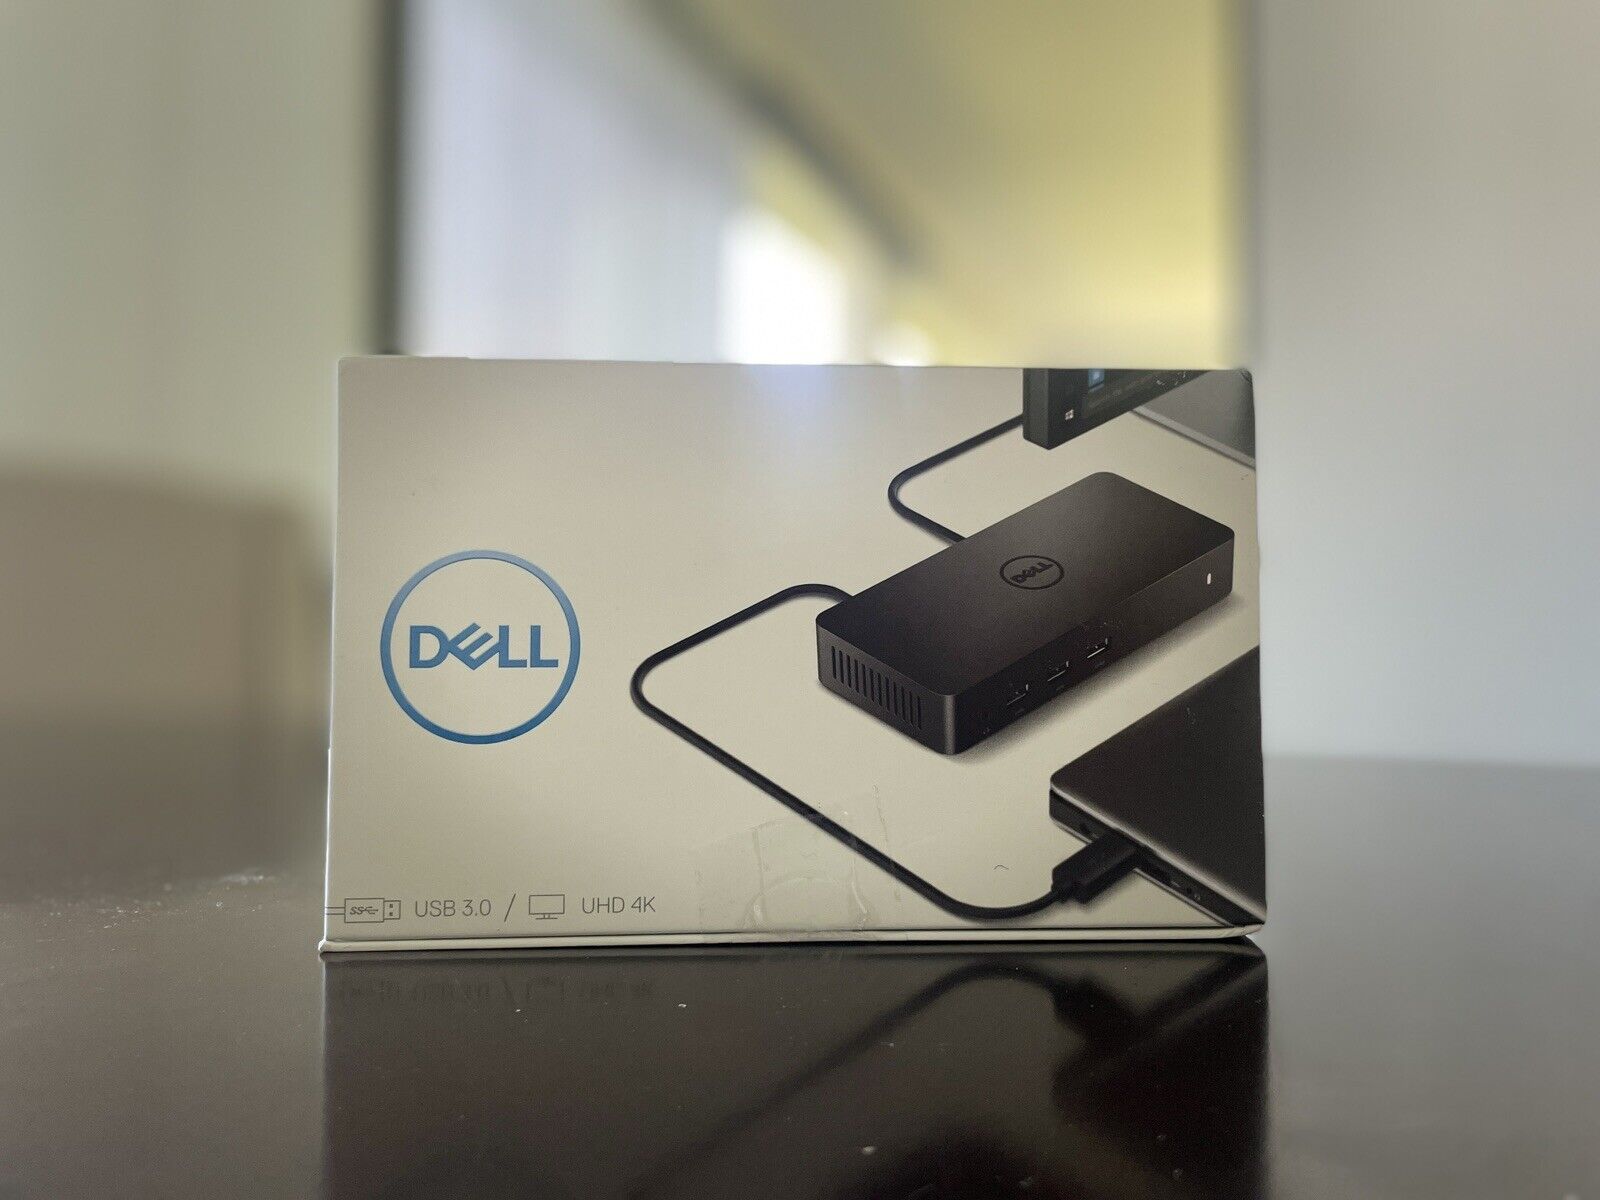 Dell USB 3.0 Ultra HD/4K Triple Display Docking Station Model D3100 Black - New